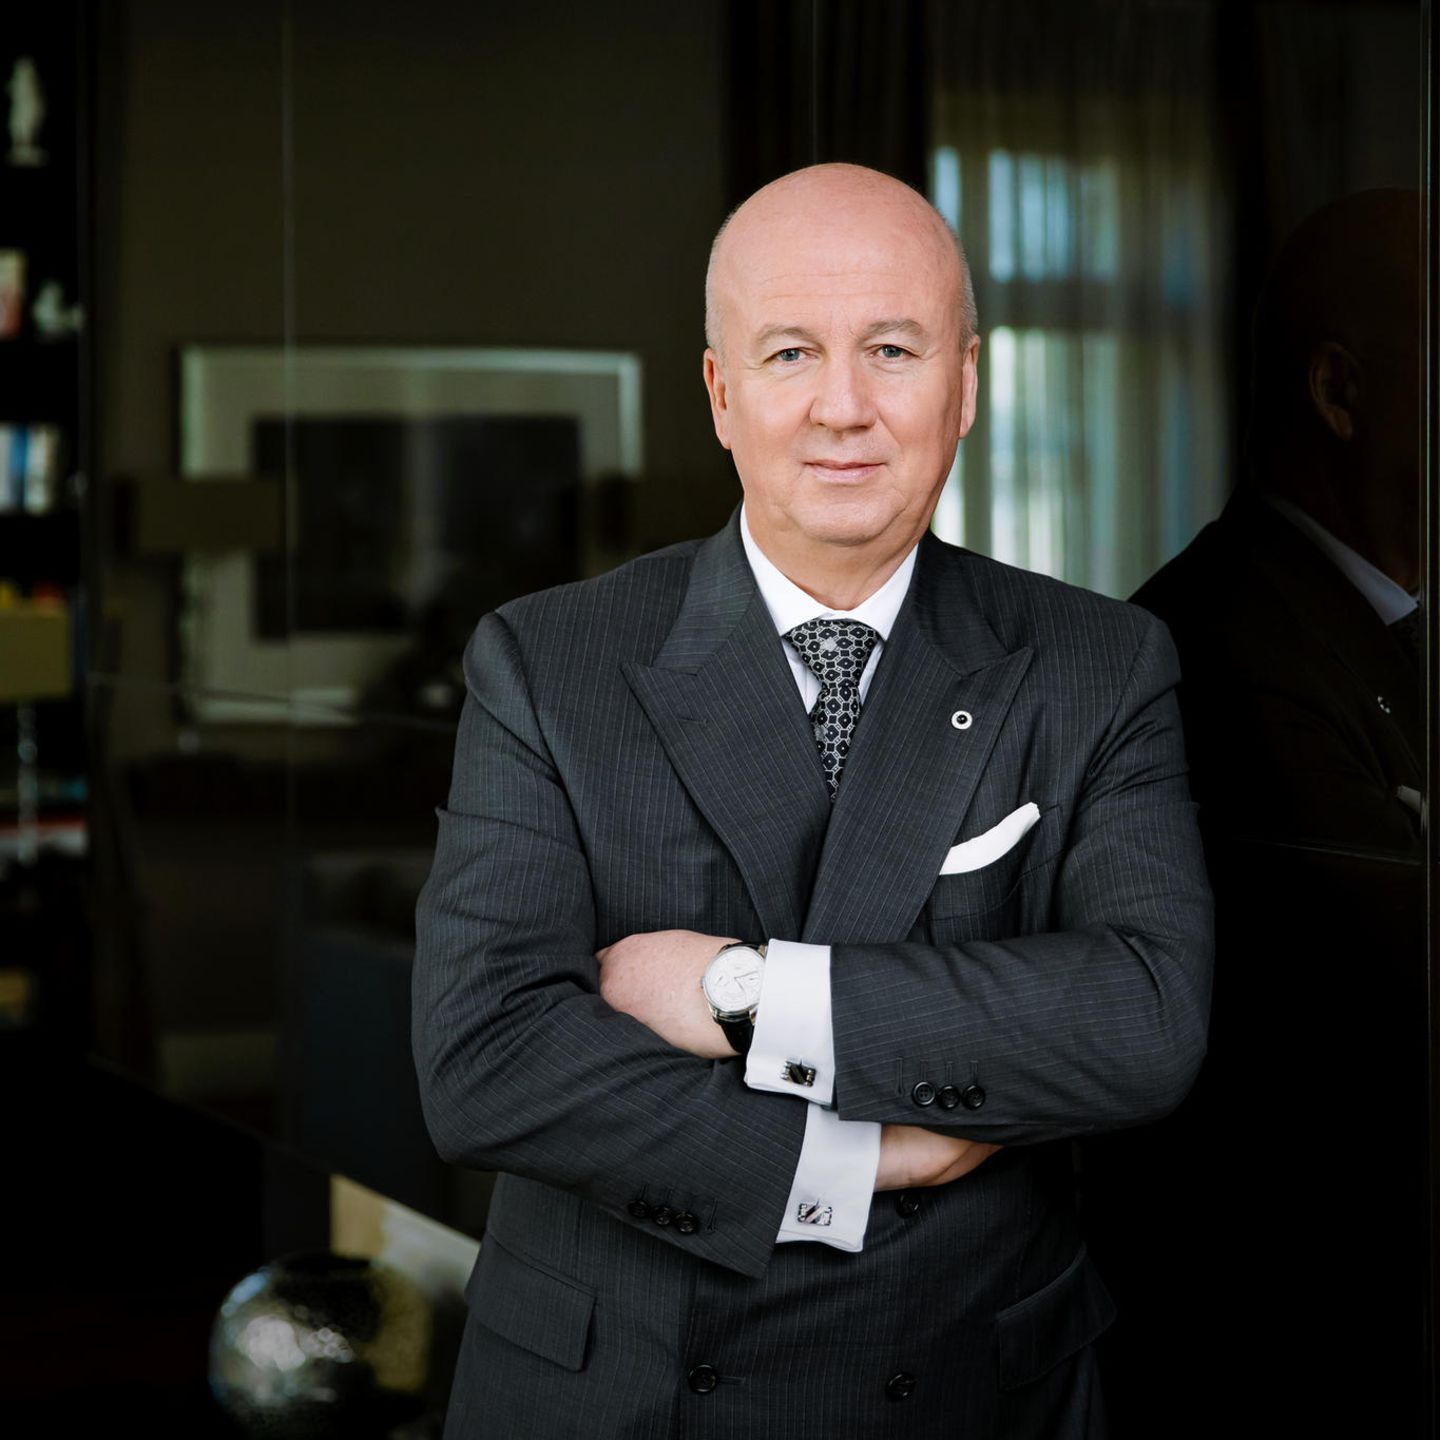 Luxus-Hotels im Porsche-Design: Der Steigenberger-Chef hat große